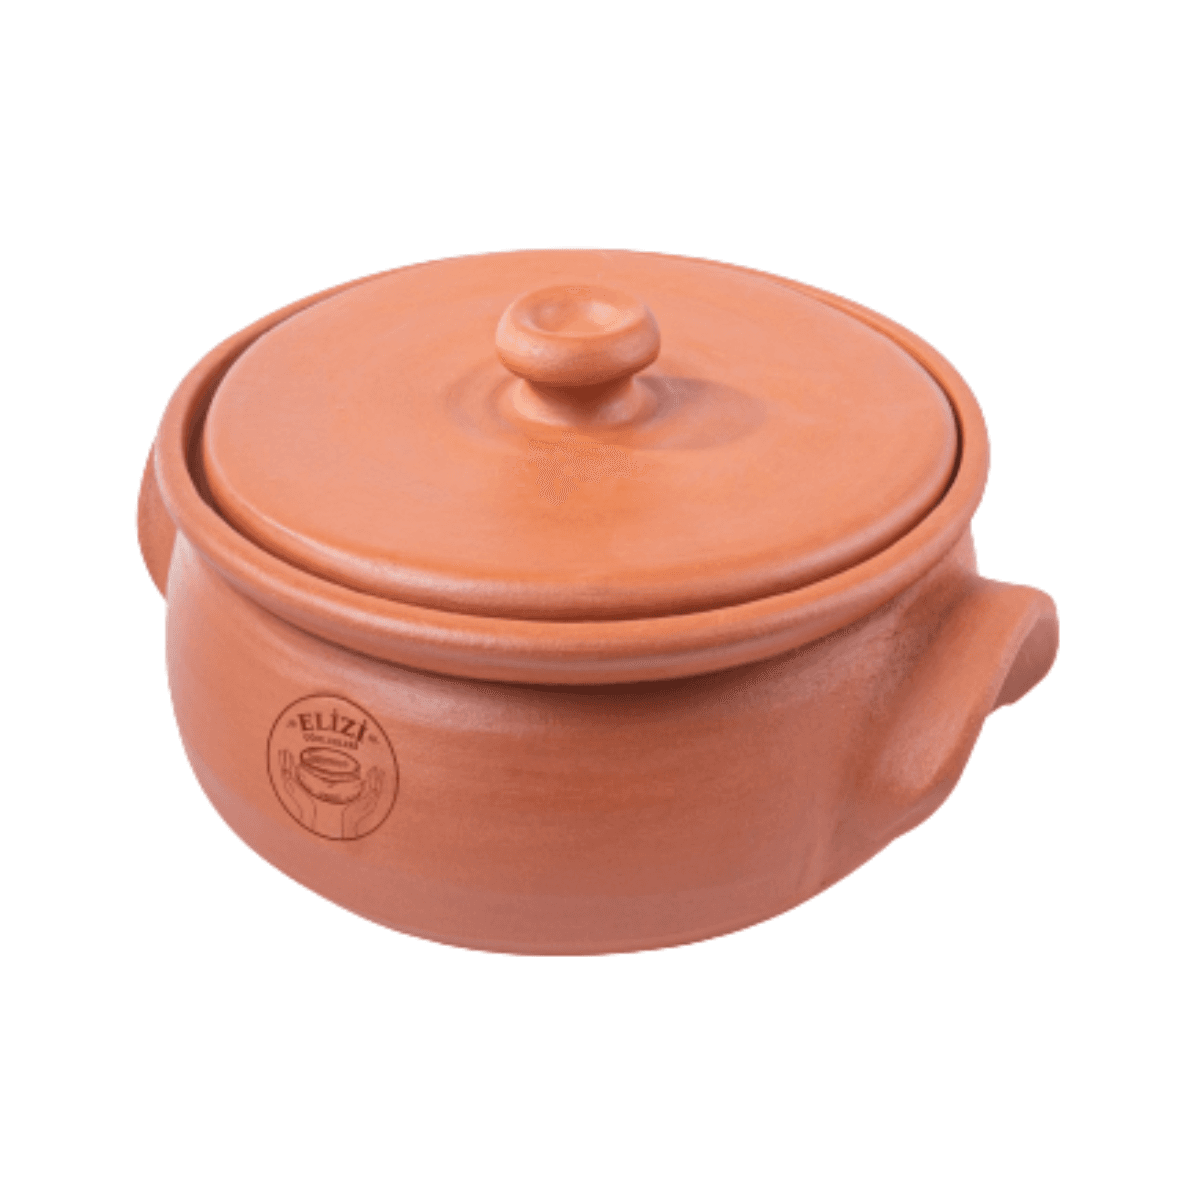 قدر فخار للطبخ 5 لتر إليزي Elizi Clay Lined Pot